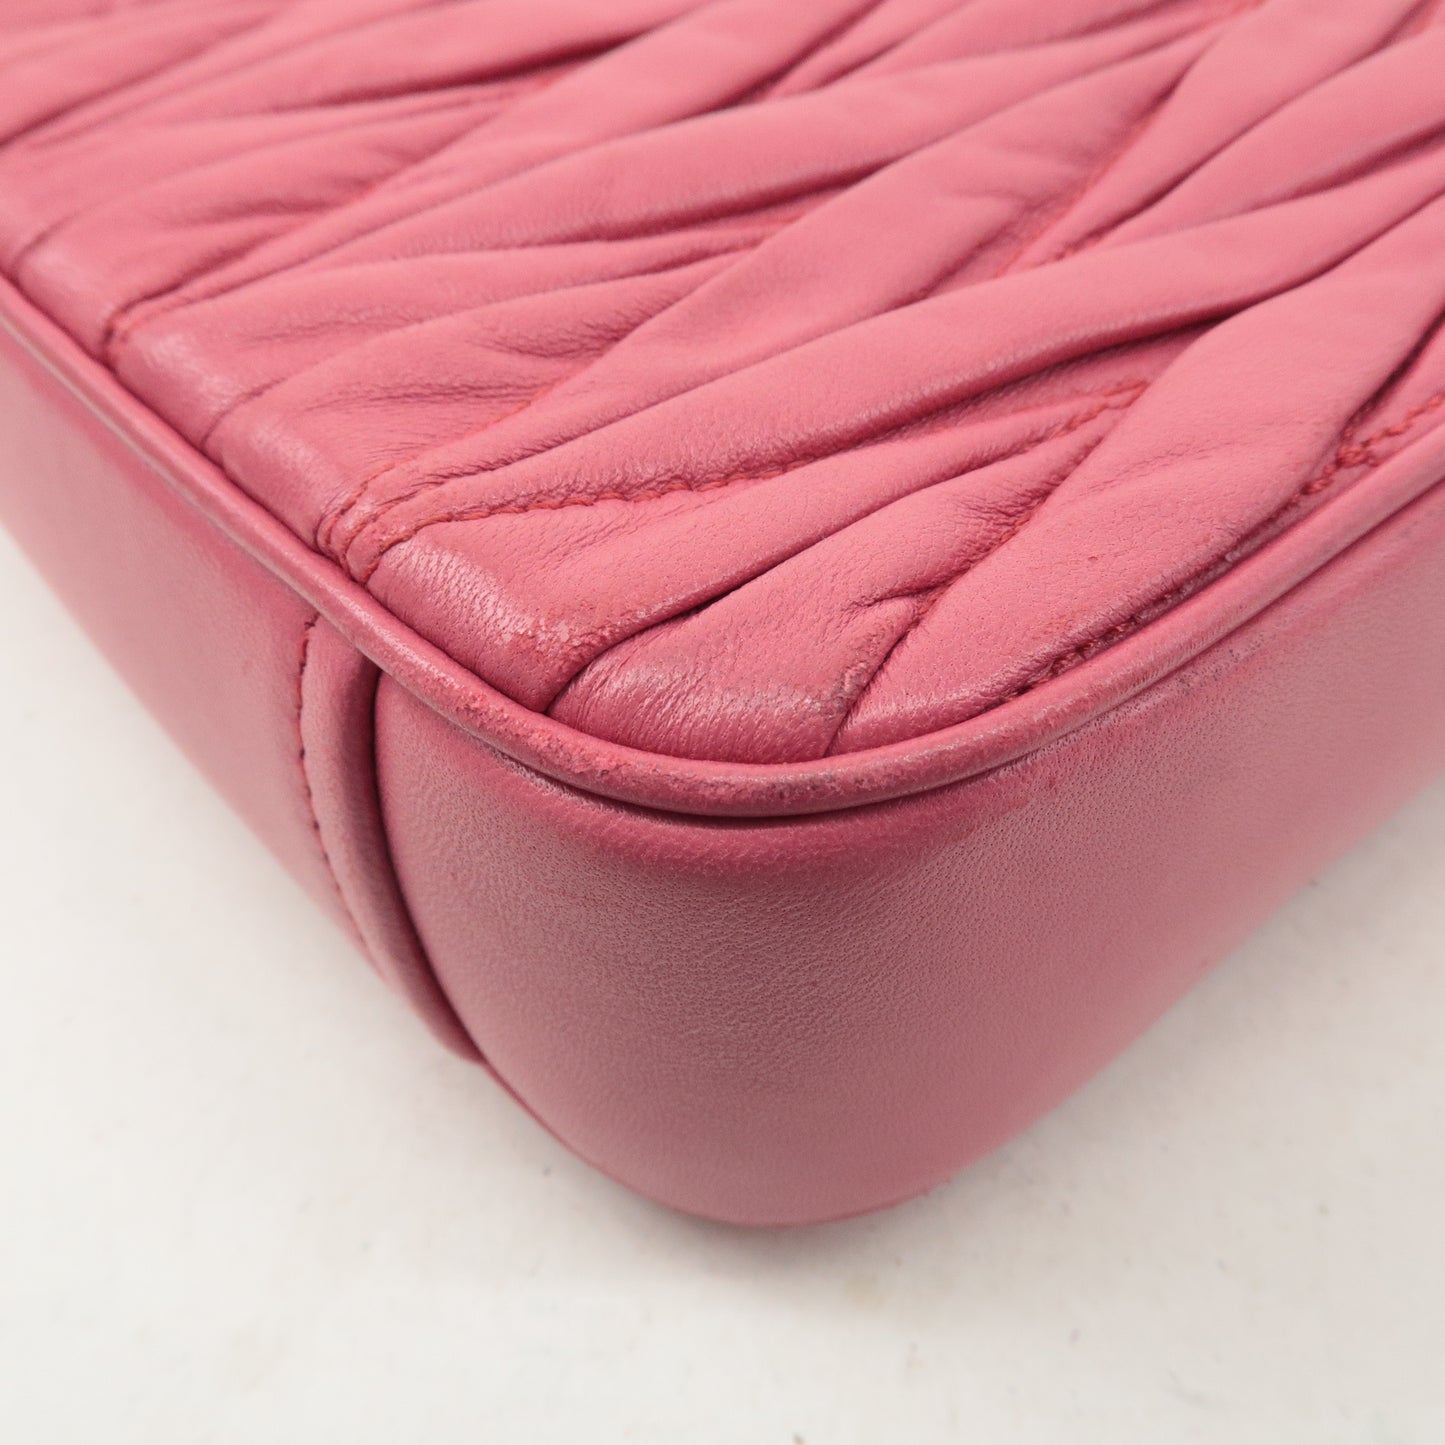 MIU MIU Matelasse Leather Chain Shoulder Bag Pink 5BD140